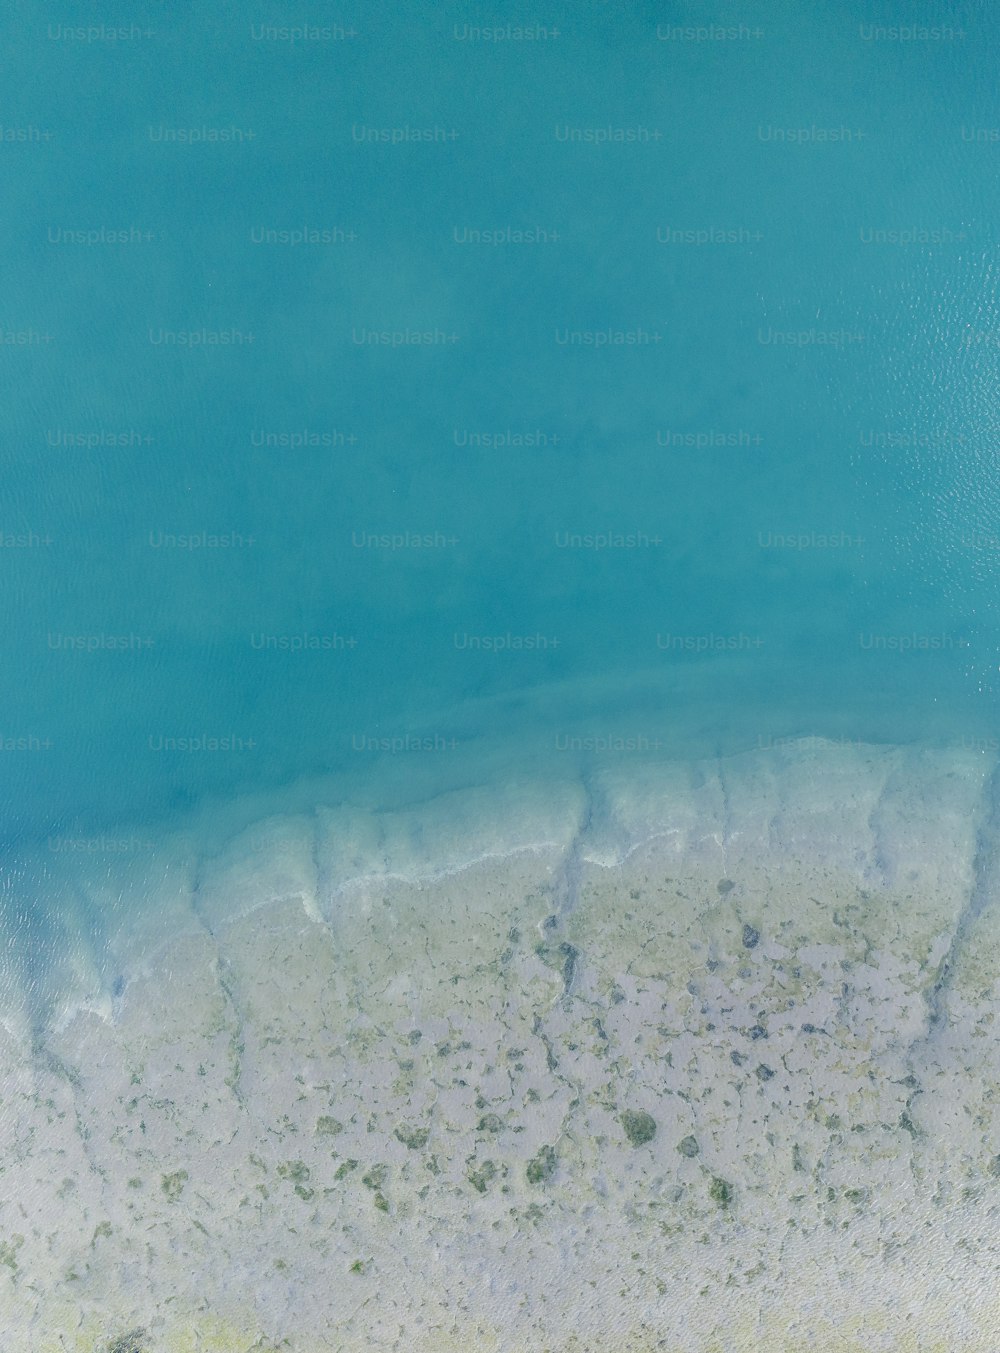 uma visão panorâmica de um corpo de água